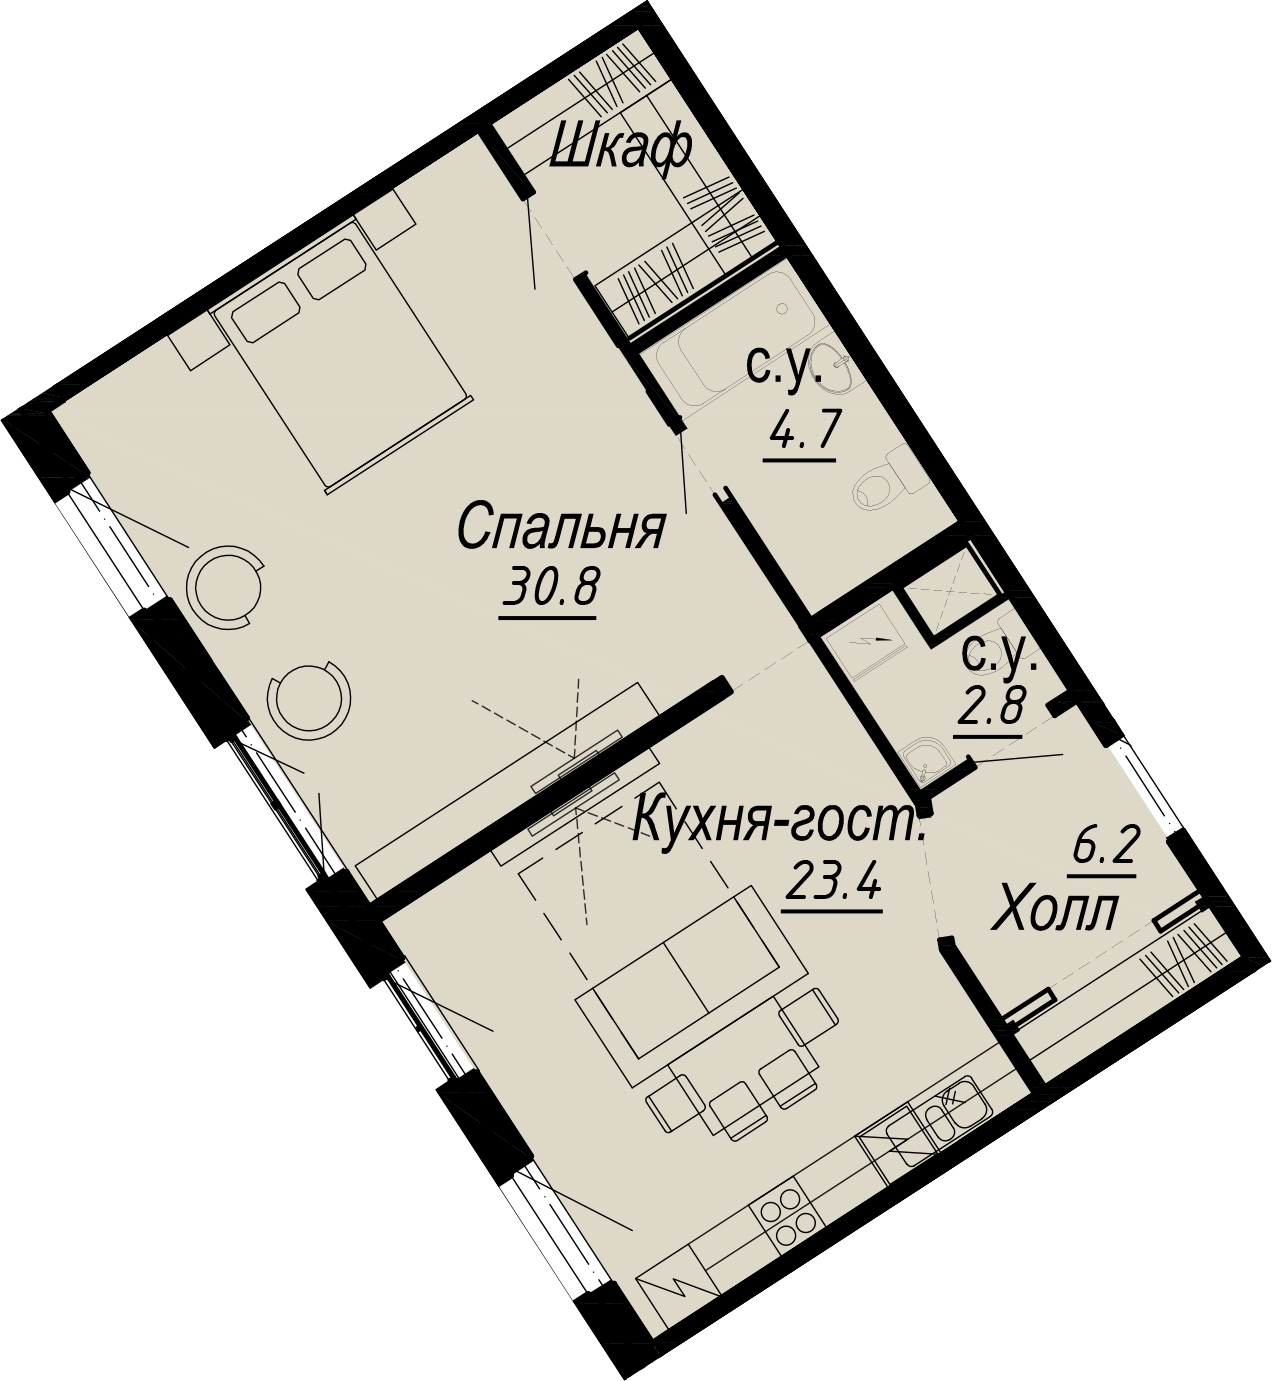 1-комнатная квартира  №2-4 в Meltzer Hall: 67.8 м², этаж 4 - купить в Санкт-Петербурге